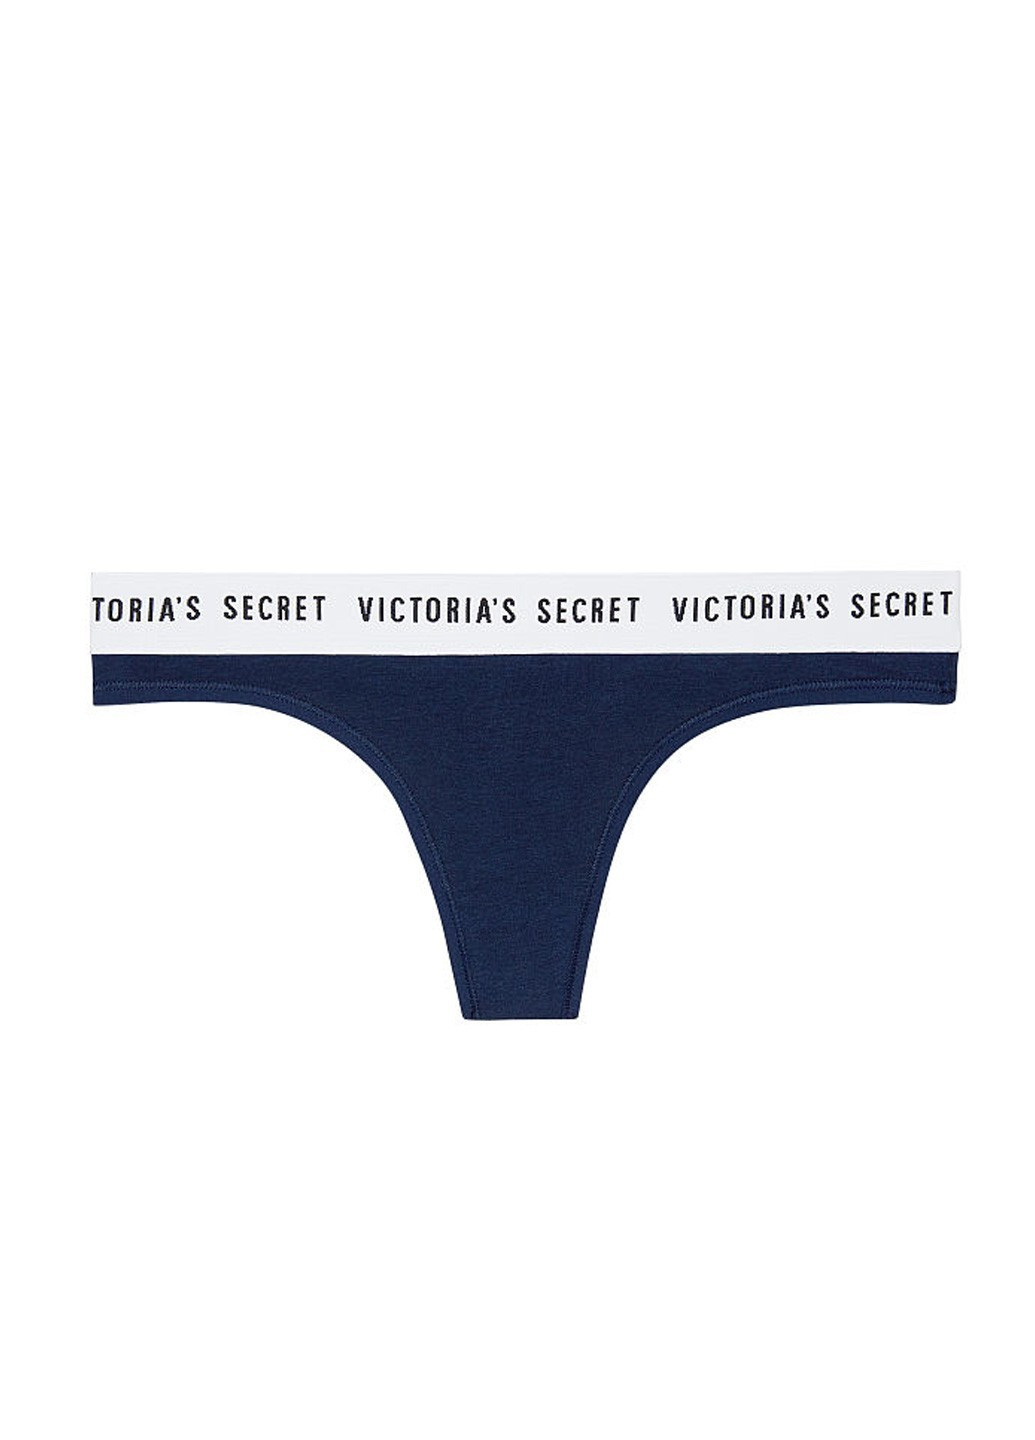 Трусики Victoria's Secret стринги логотипы синие повседневные хлопок